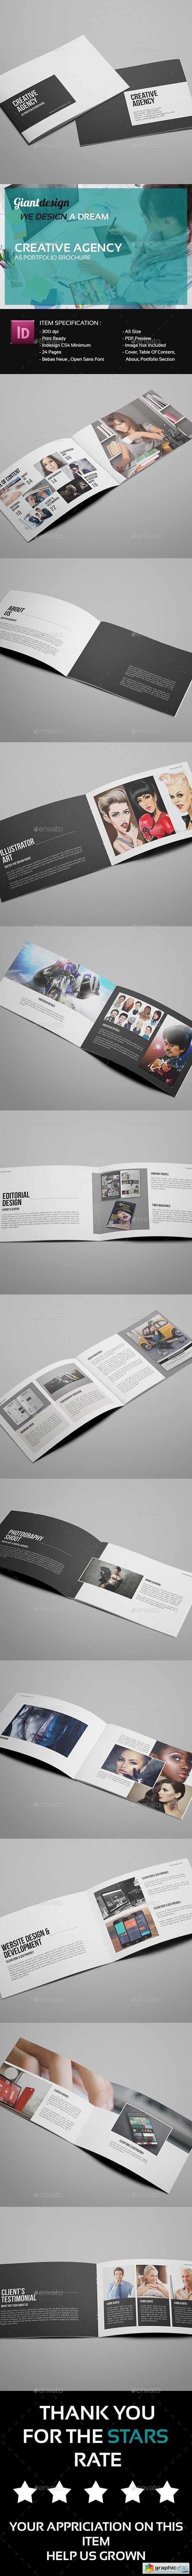 Creative Agency - A5 Portfolio Brochure